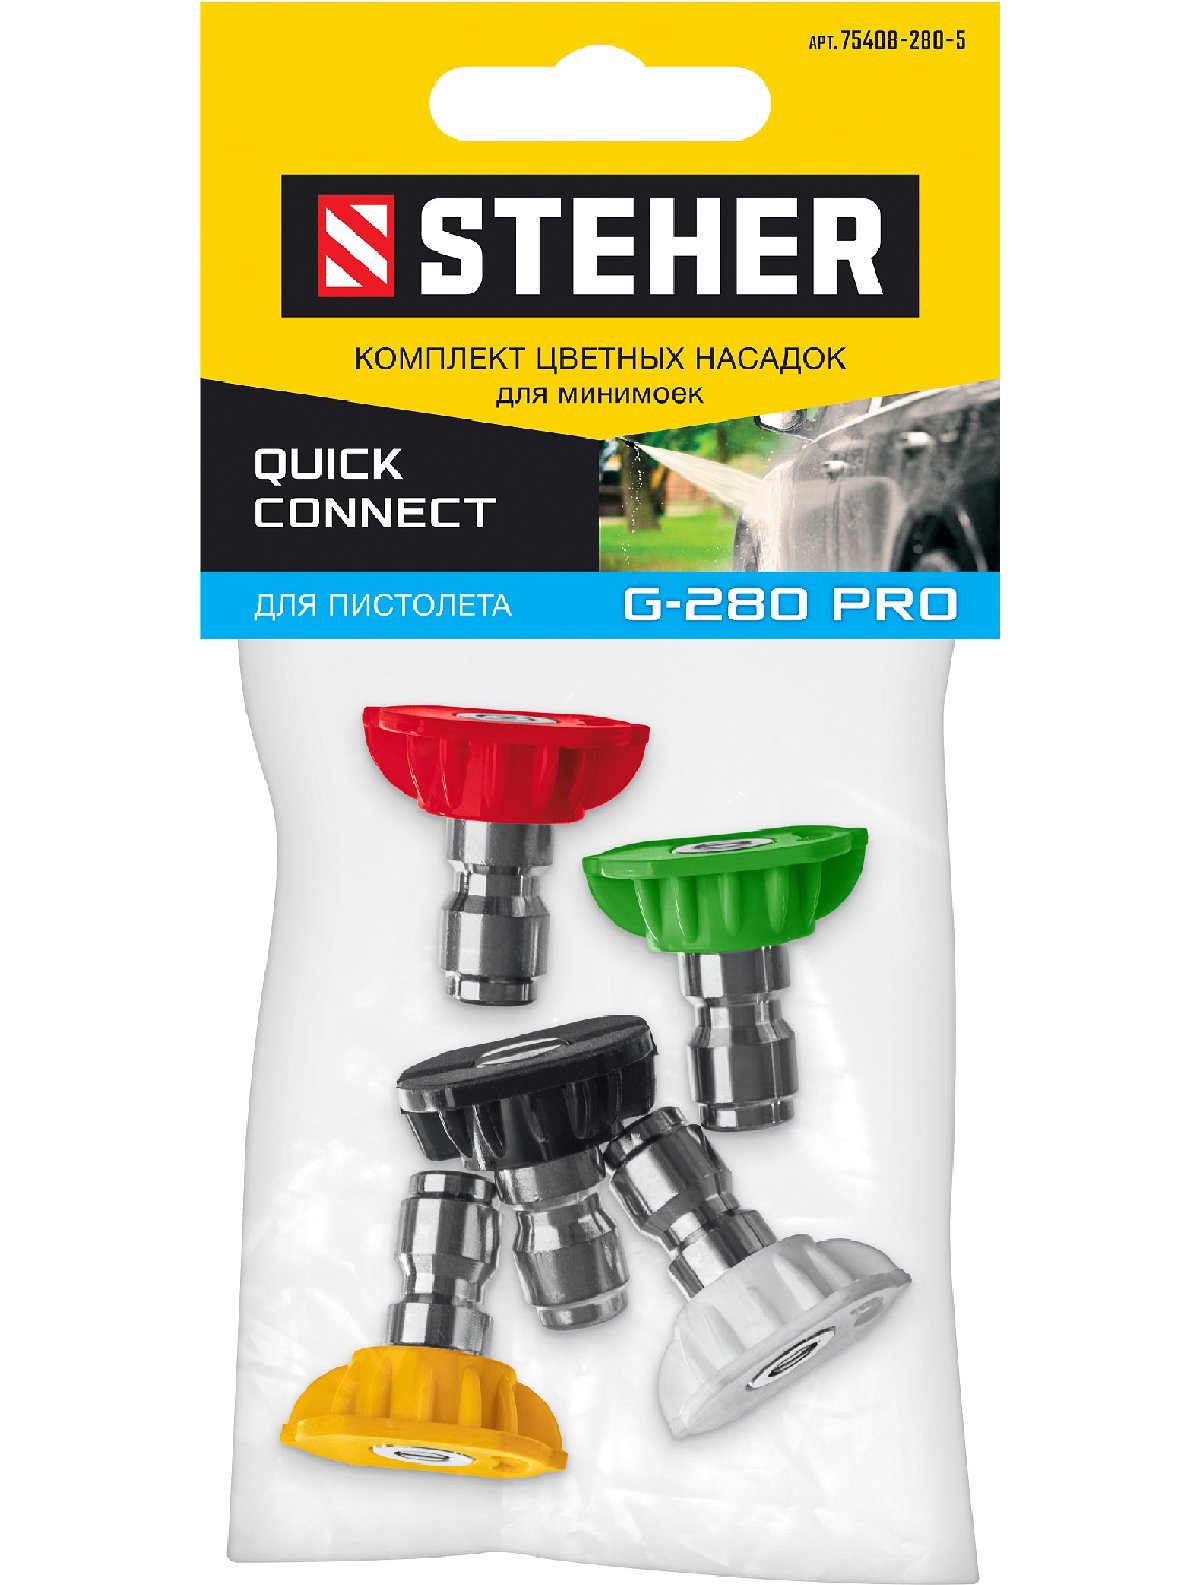 STEHER   G-280 PRO,    5  (75408-280) (75408-280-5)